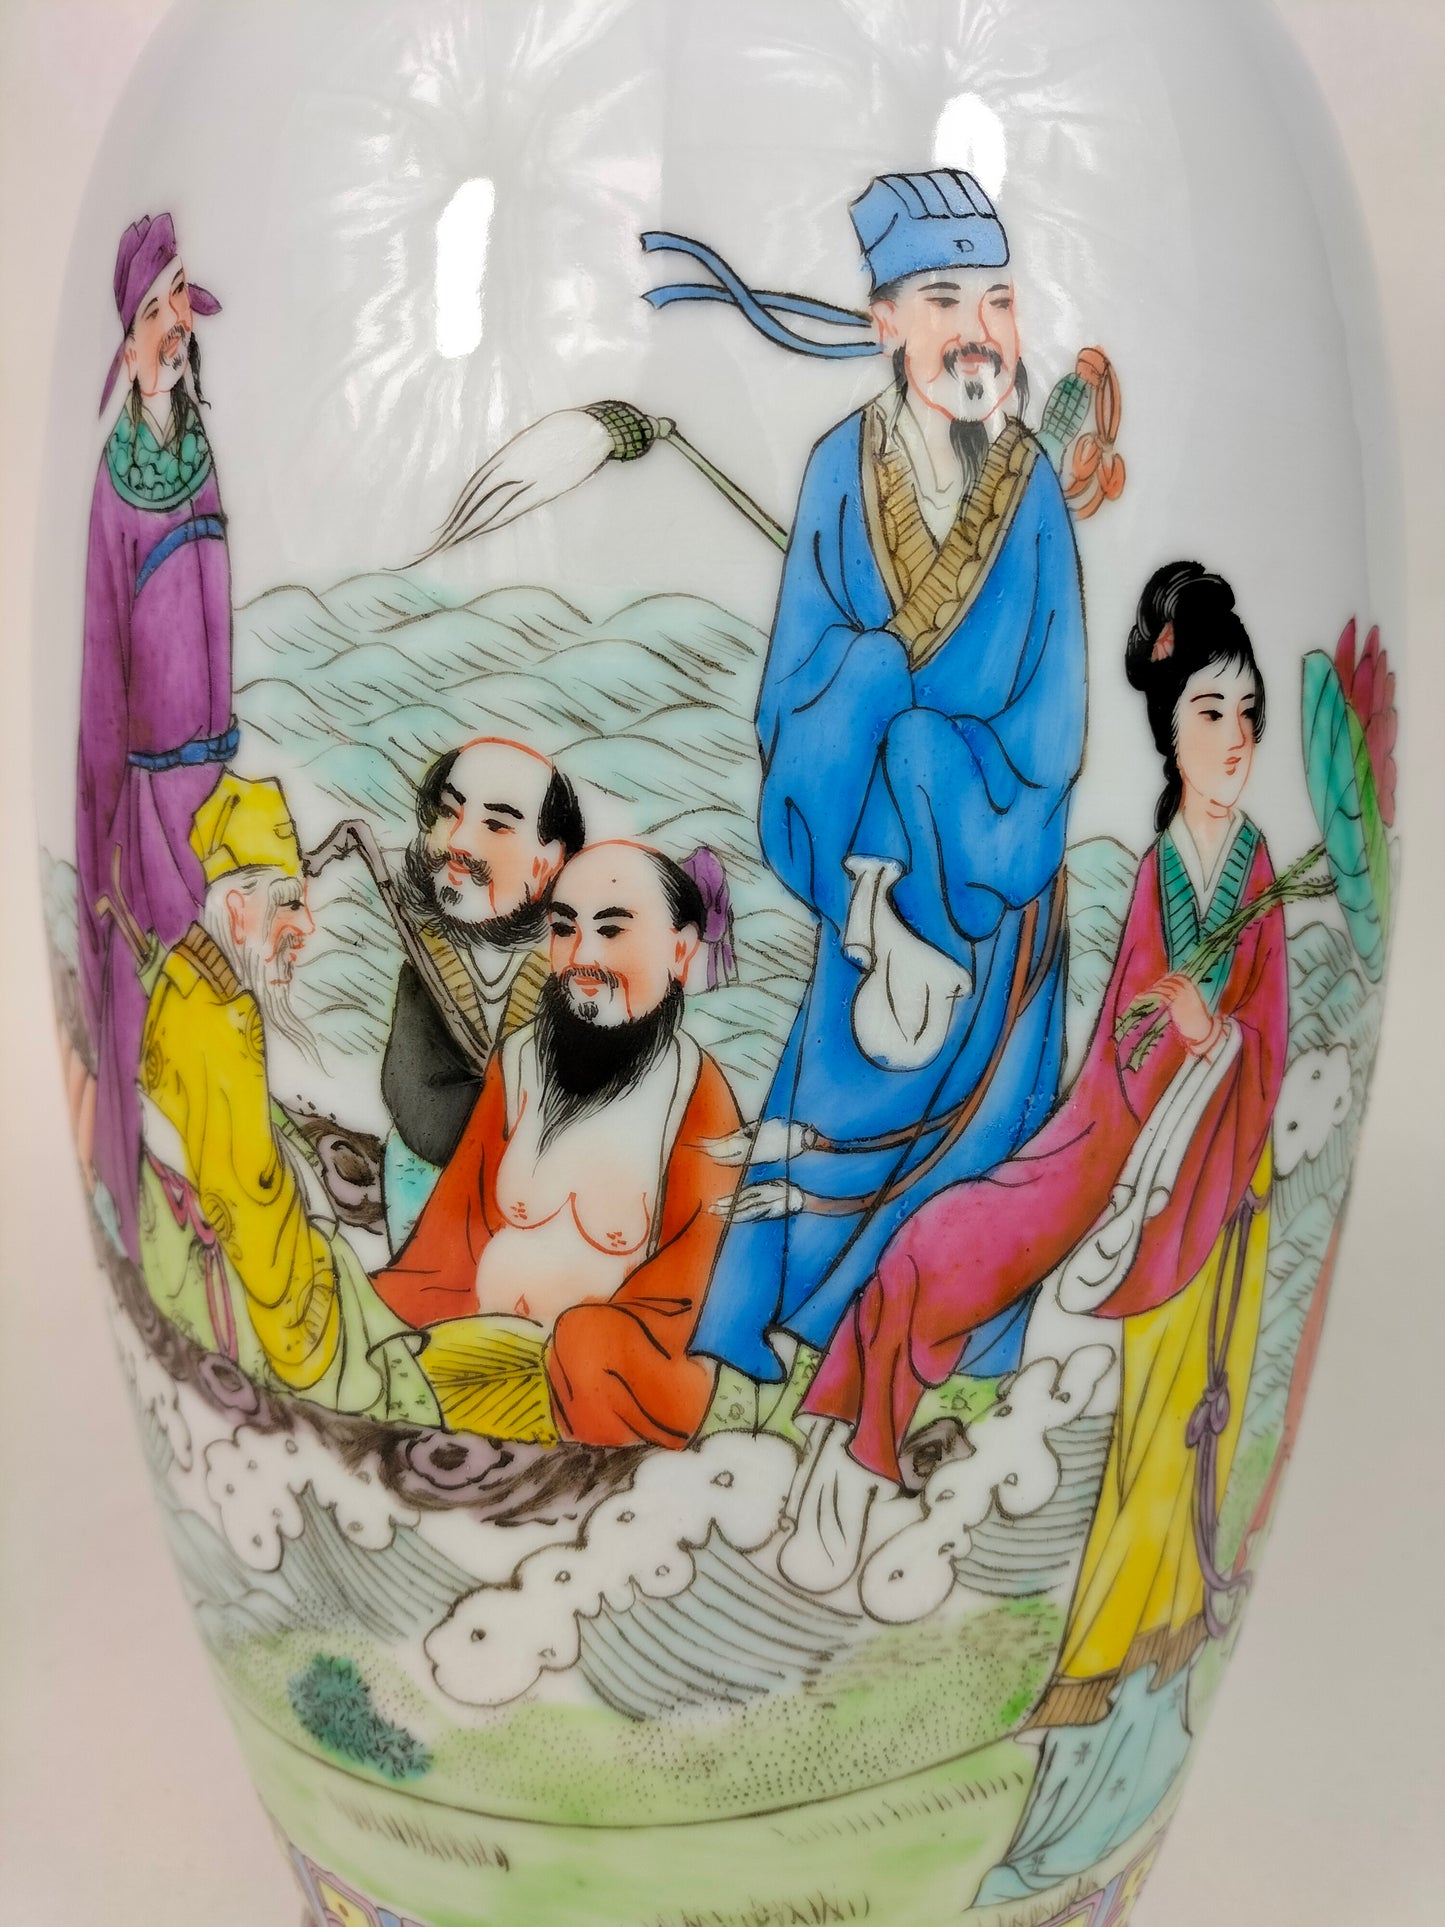 装饰有 8 个神仙的中国粉彩花瓶 // 景德镇 - 20 世纪